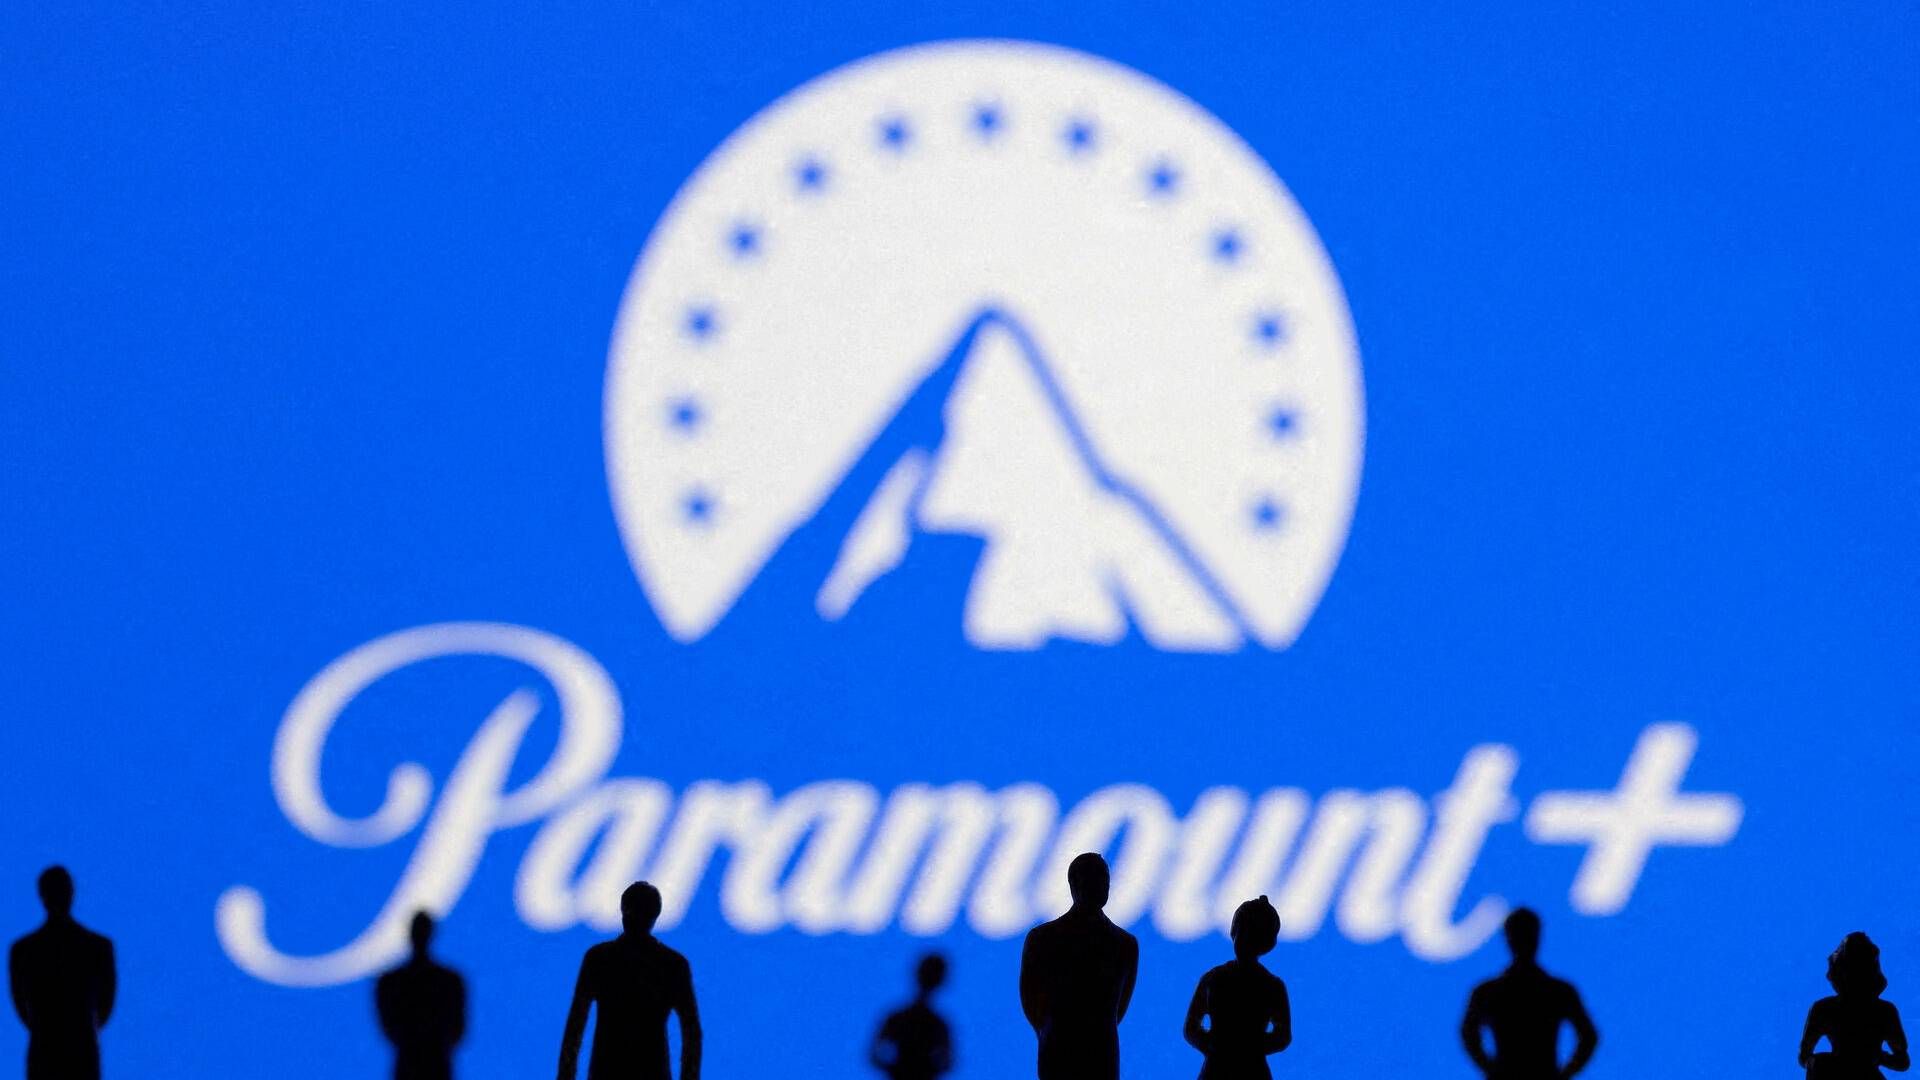 Samarbejdet vil styrke Paramount i konkurrencen mod andre streamingplatforme.